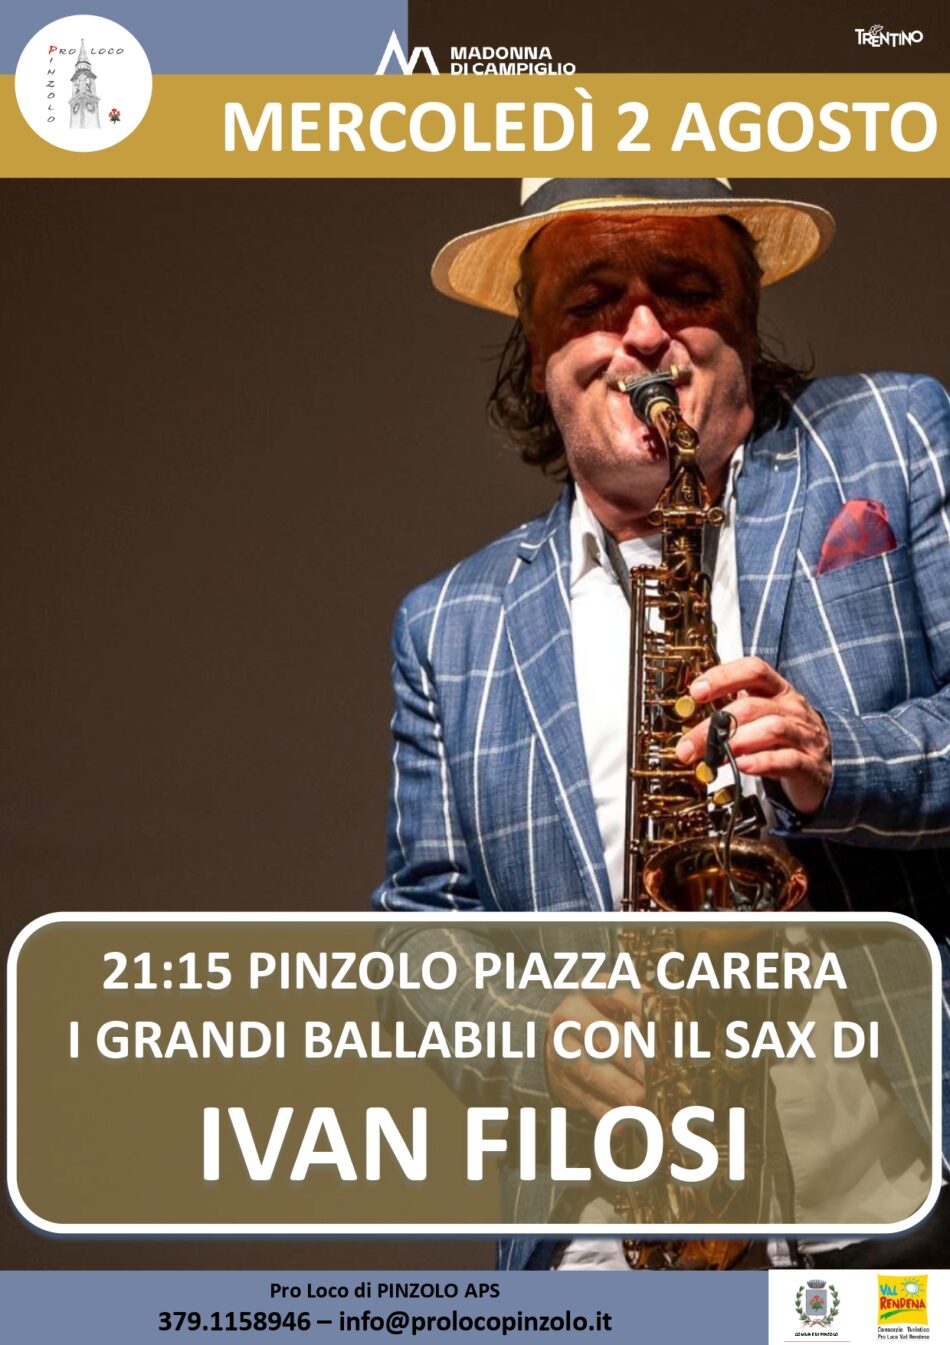 L’Estate è Pinzolo: Mercoledì 2 agosto ore 21.15 I grandi ballabili con il sax di IVAN FILOSI in piazza Carera